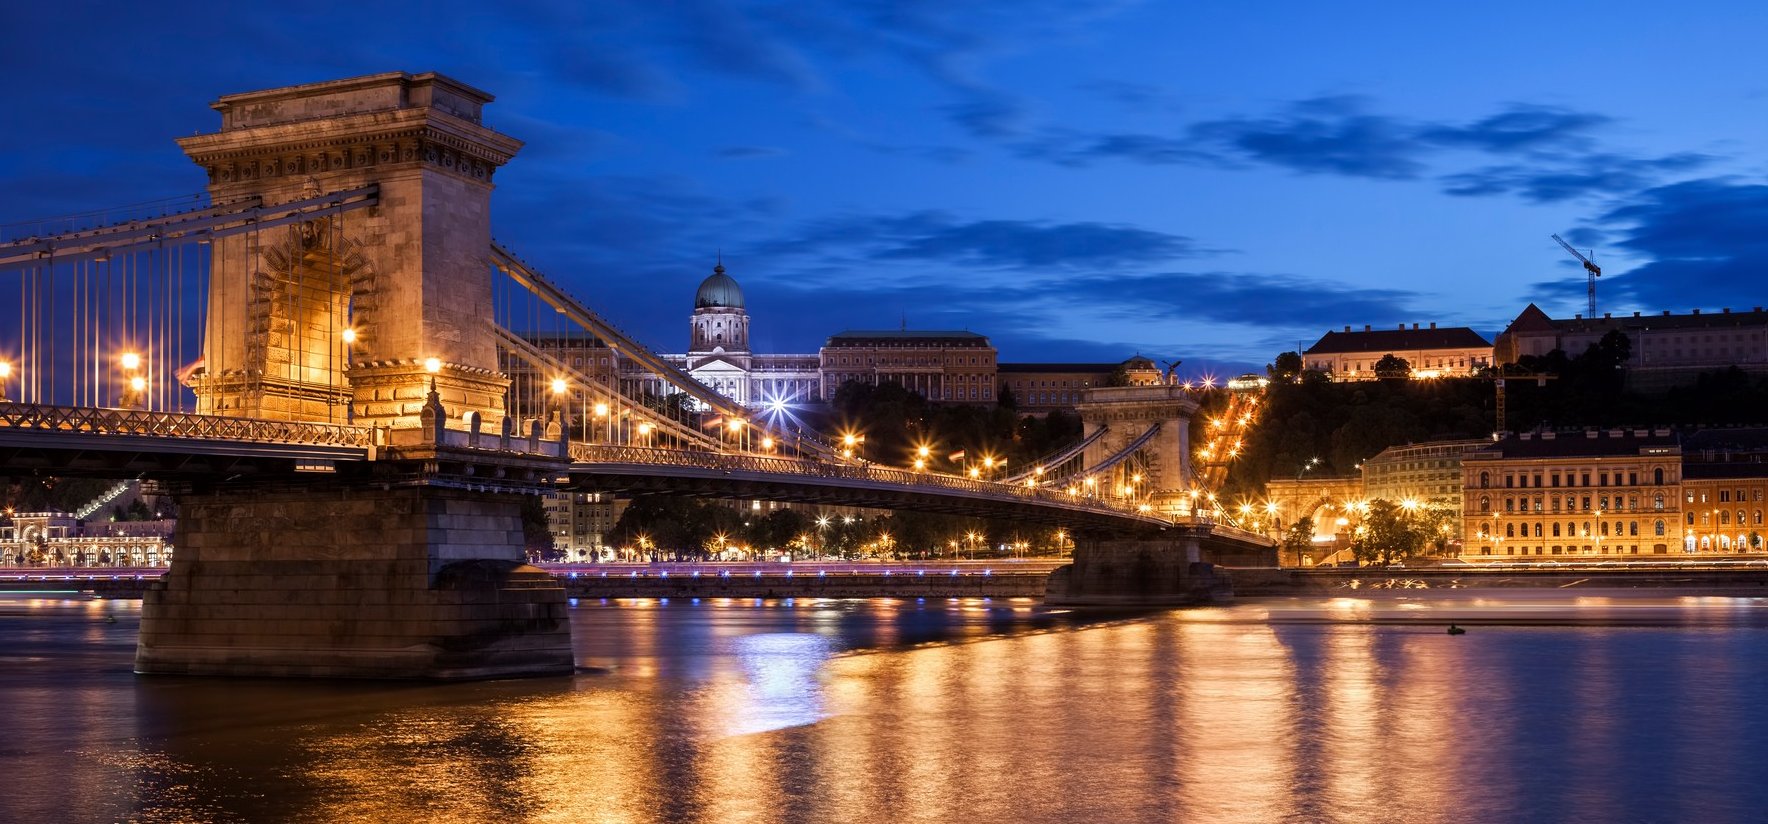 Ez egy nagyon jeles nap Budapest történelmében – tudod, hogy mi történt november 17-én?